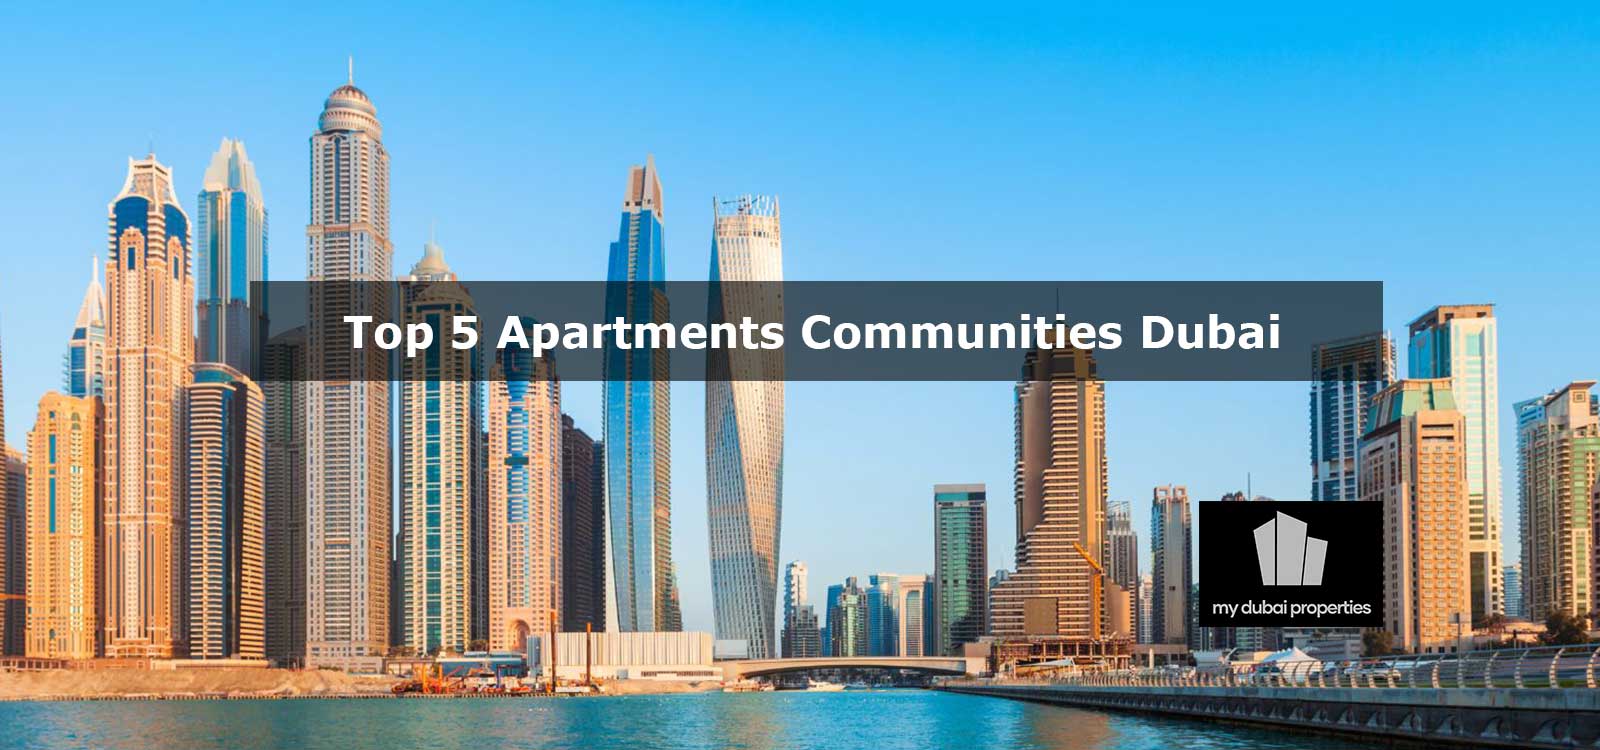 Top 5 Apartment Communities in Dubai